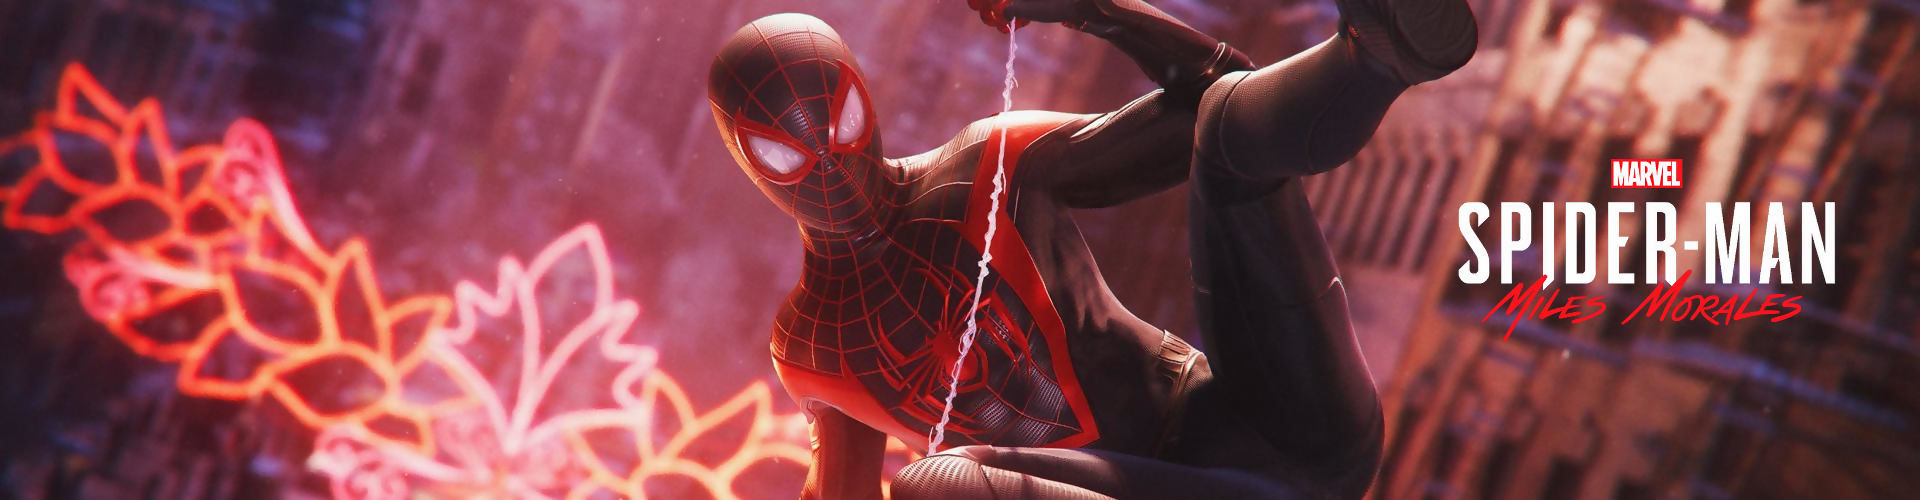 Marvel's Spider-Man: Miles Morales vaut-il le coup ?